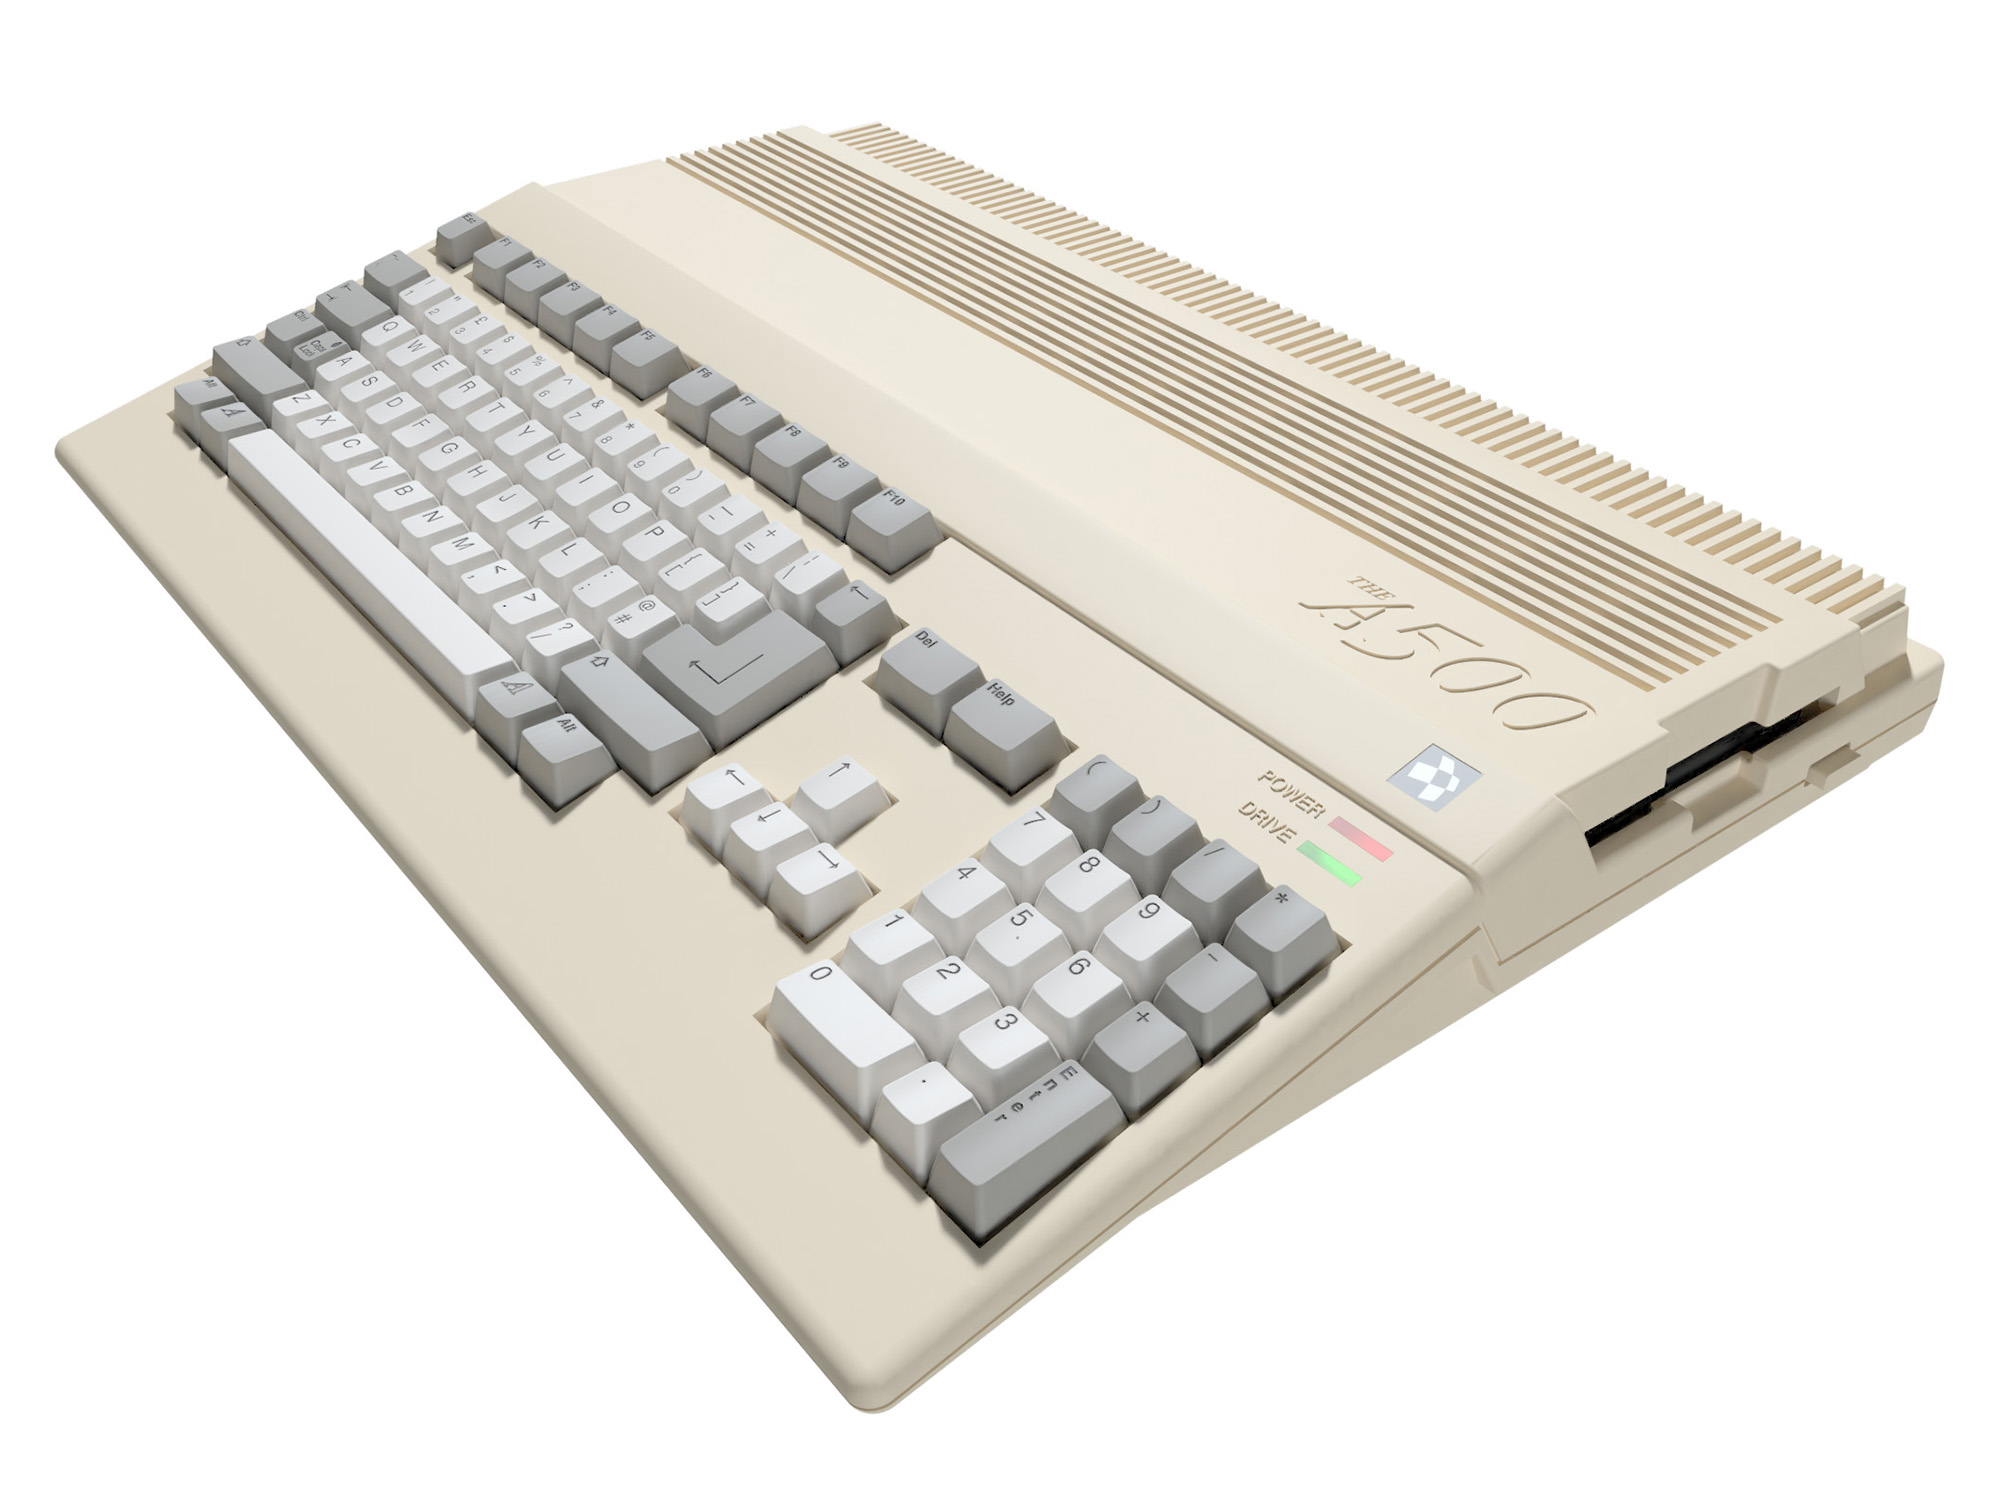 A500 Mini- (Amiga 500) regresa en consola miniatura